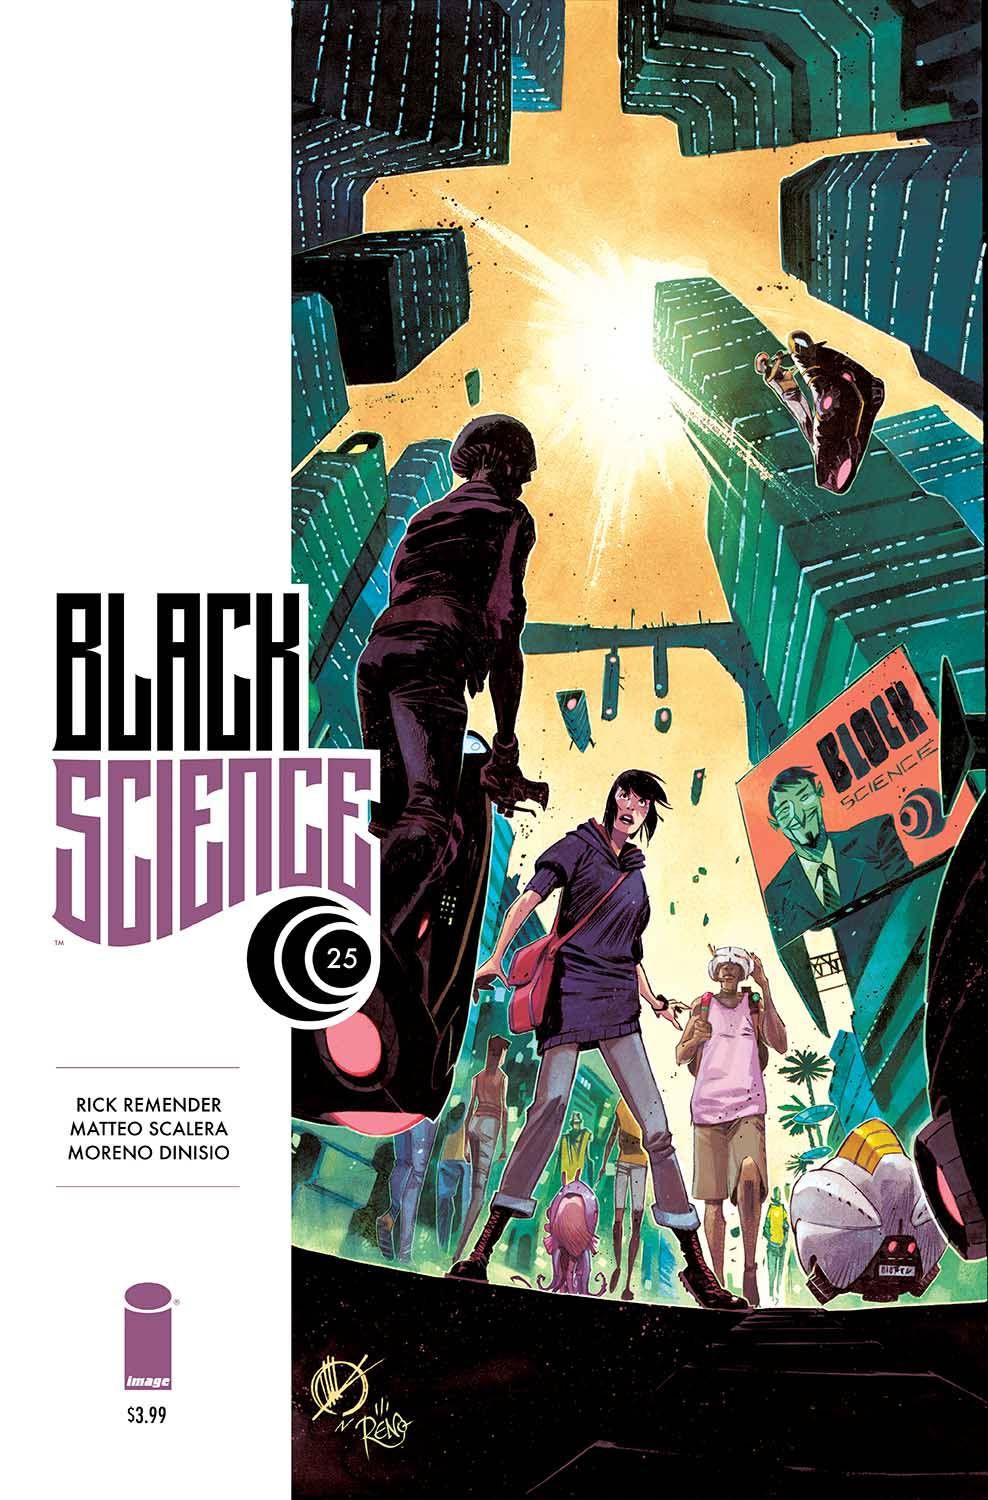 Black Science #25 Comic